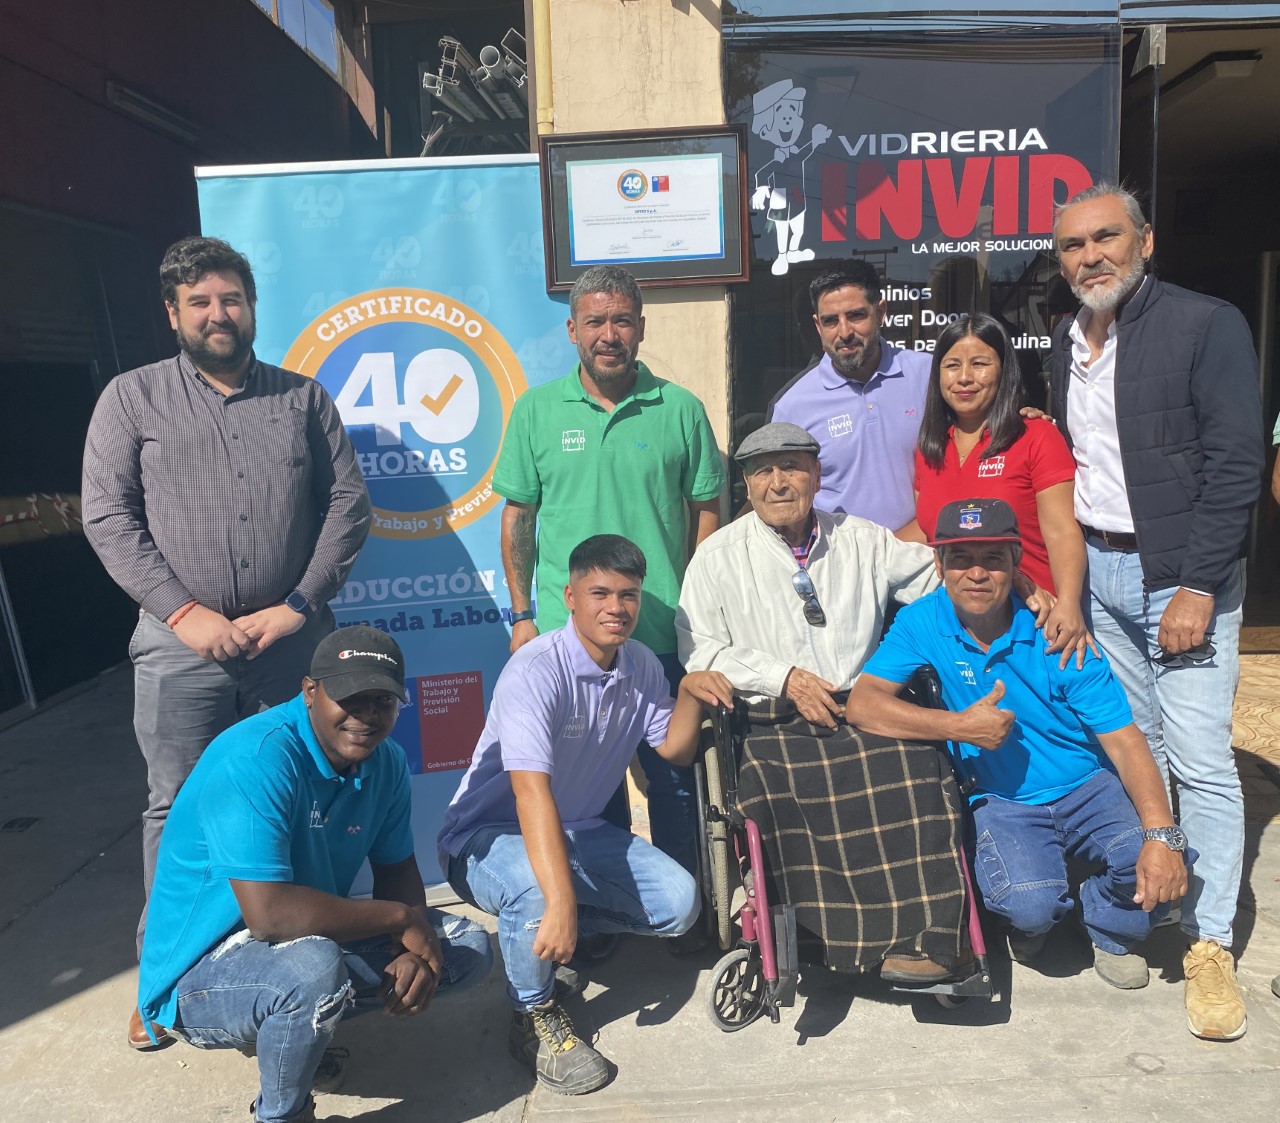 Empresas en Atacama continúan recibiendo el sello #40Horas tras reducir  su jornada laboral